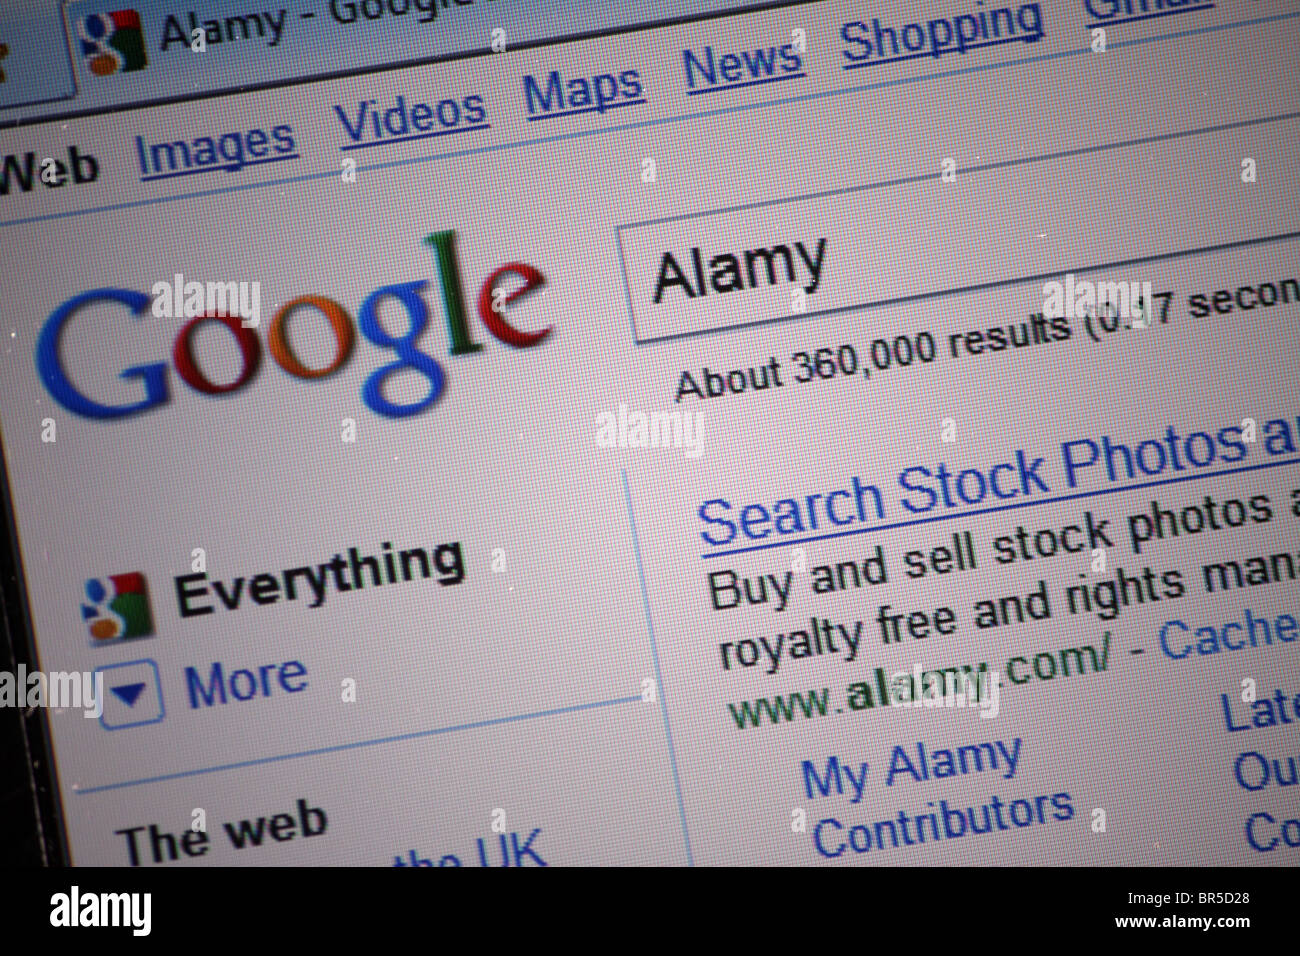 Suchen Sie im Internet in Googles Suchmaschine für die Alamy stock Fotografie-Website; wie in den Ergebnissen angezeigt Stockfoto